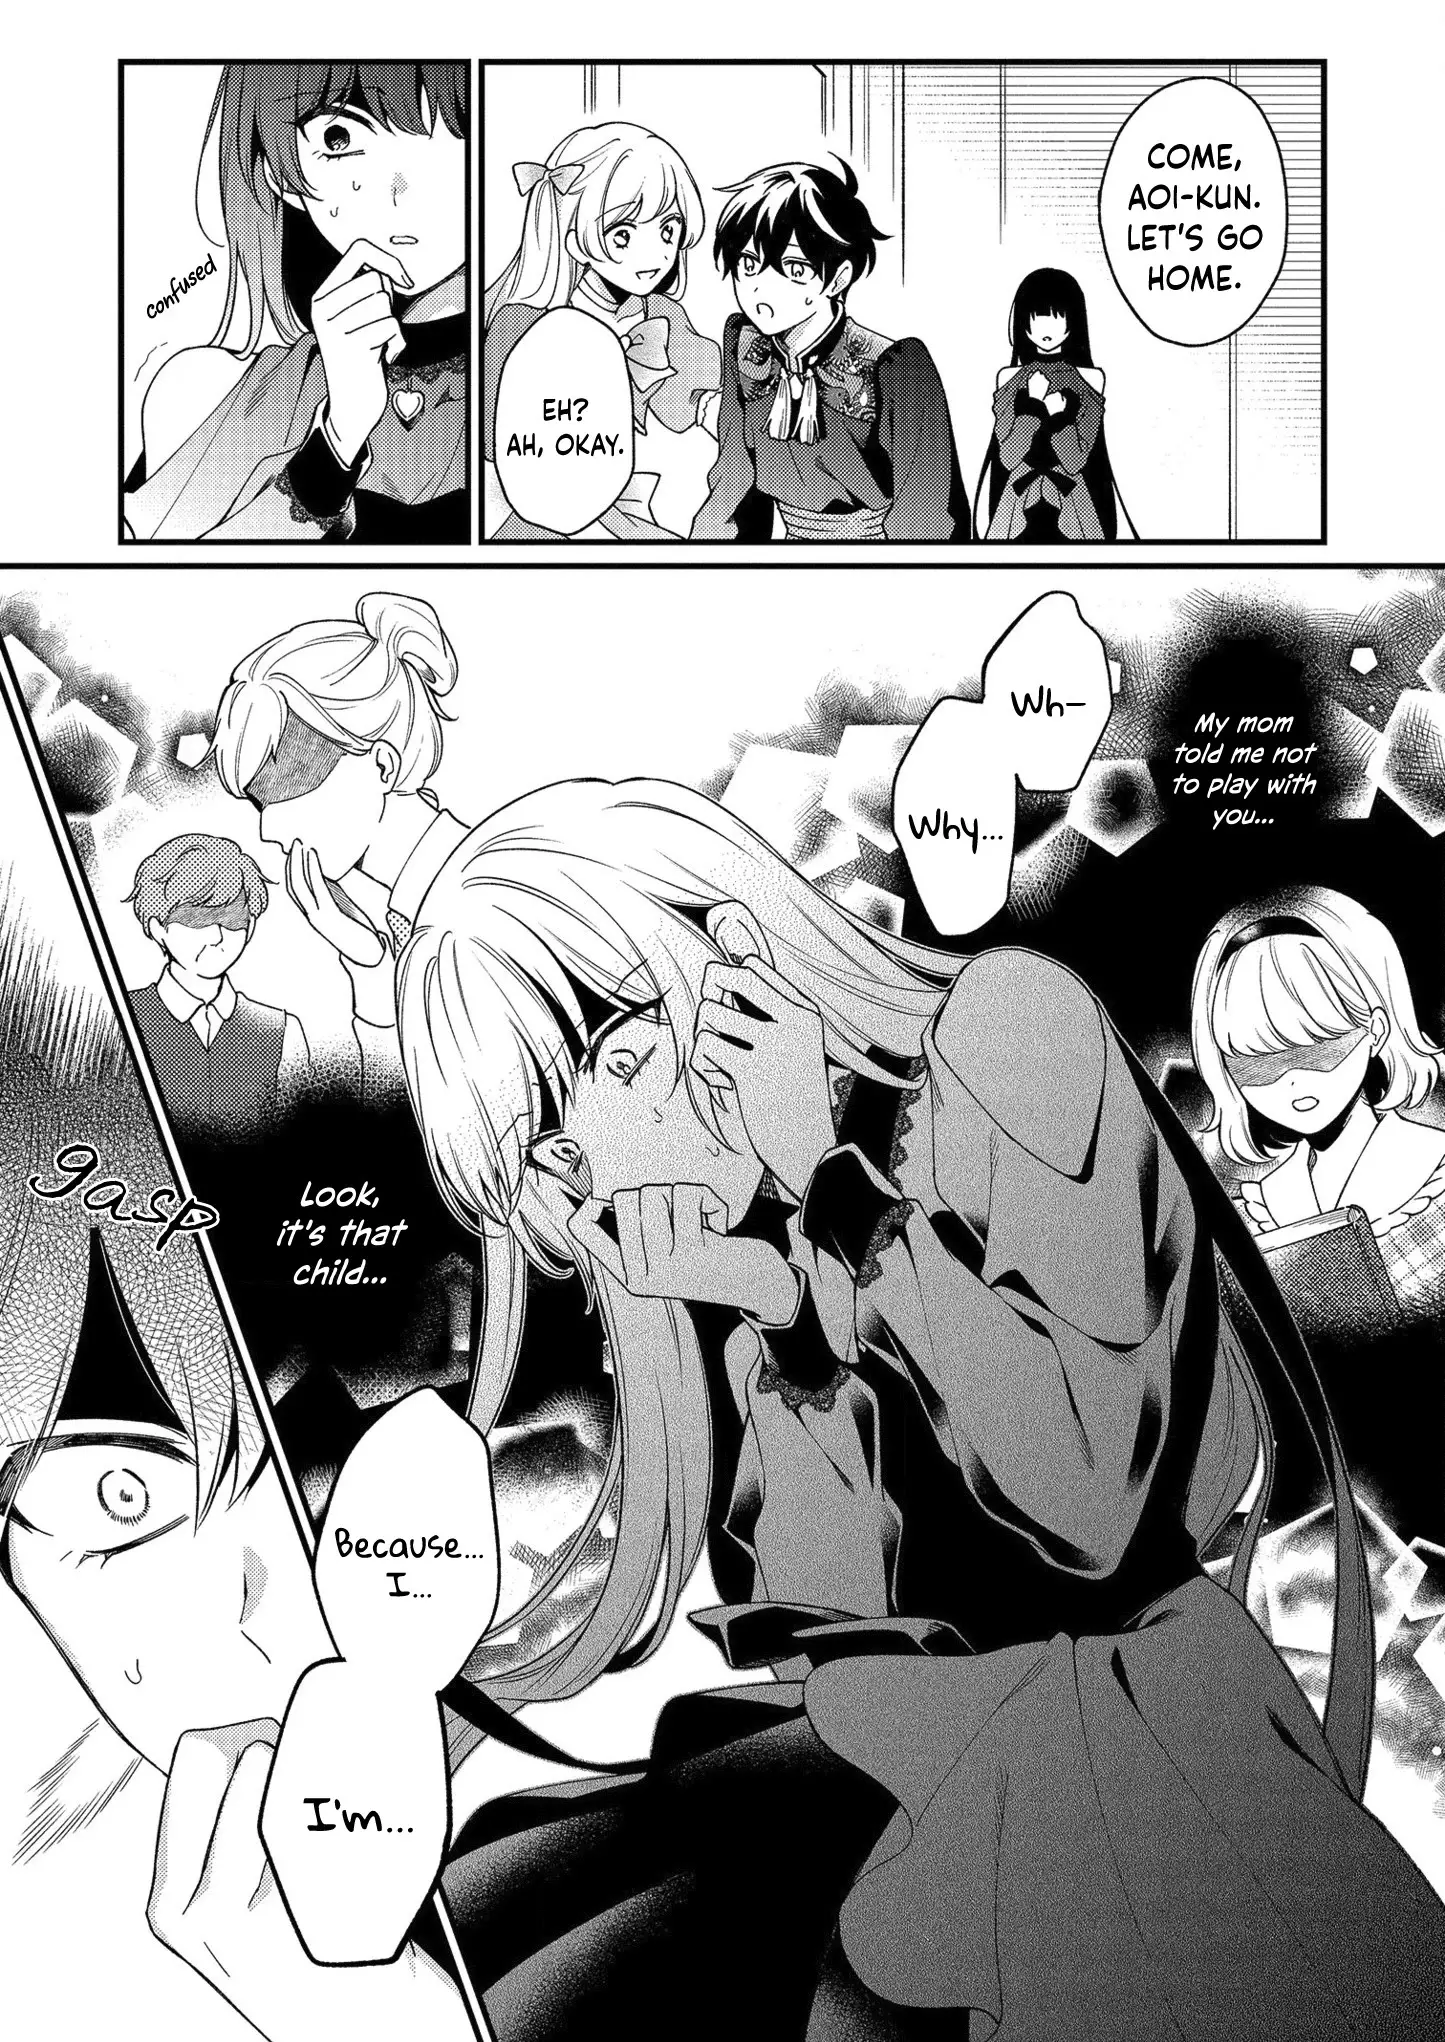 No Match For Aoi-Kun - 6 page 21